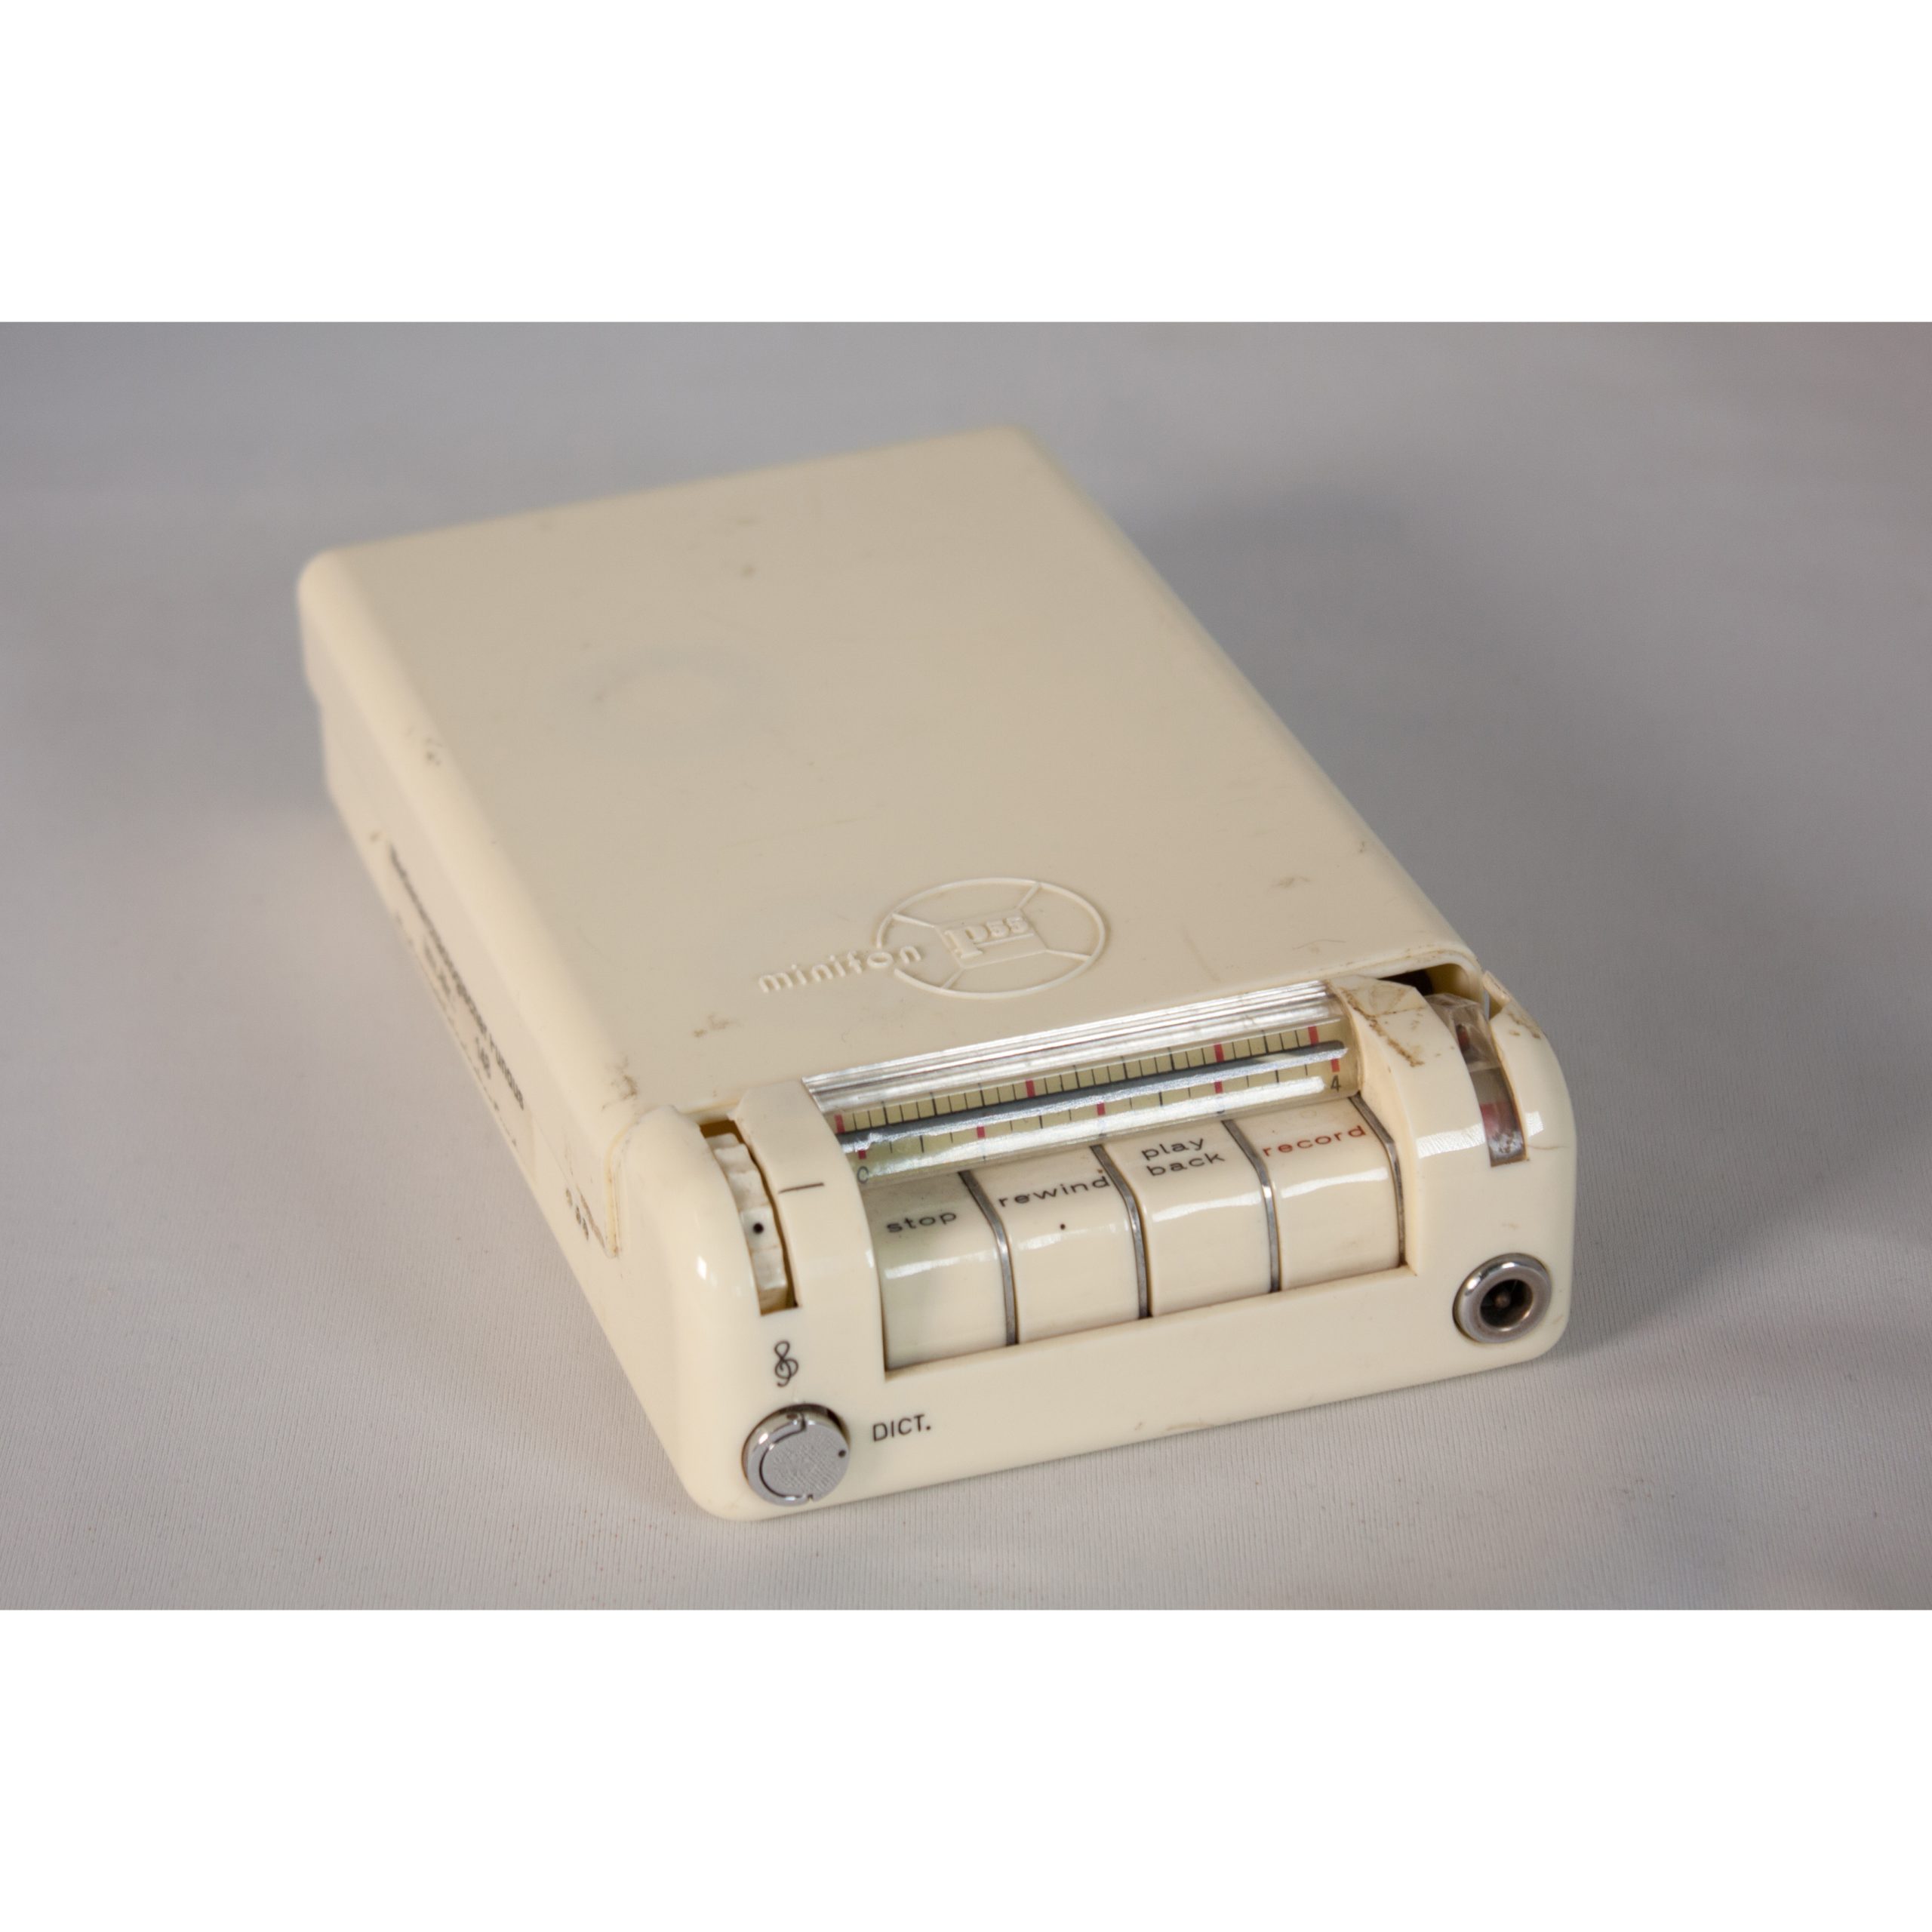 Minifon P55 portable wire recorder